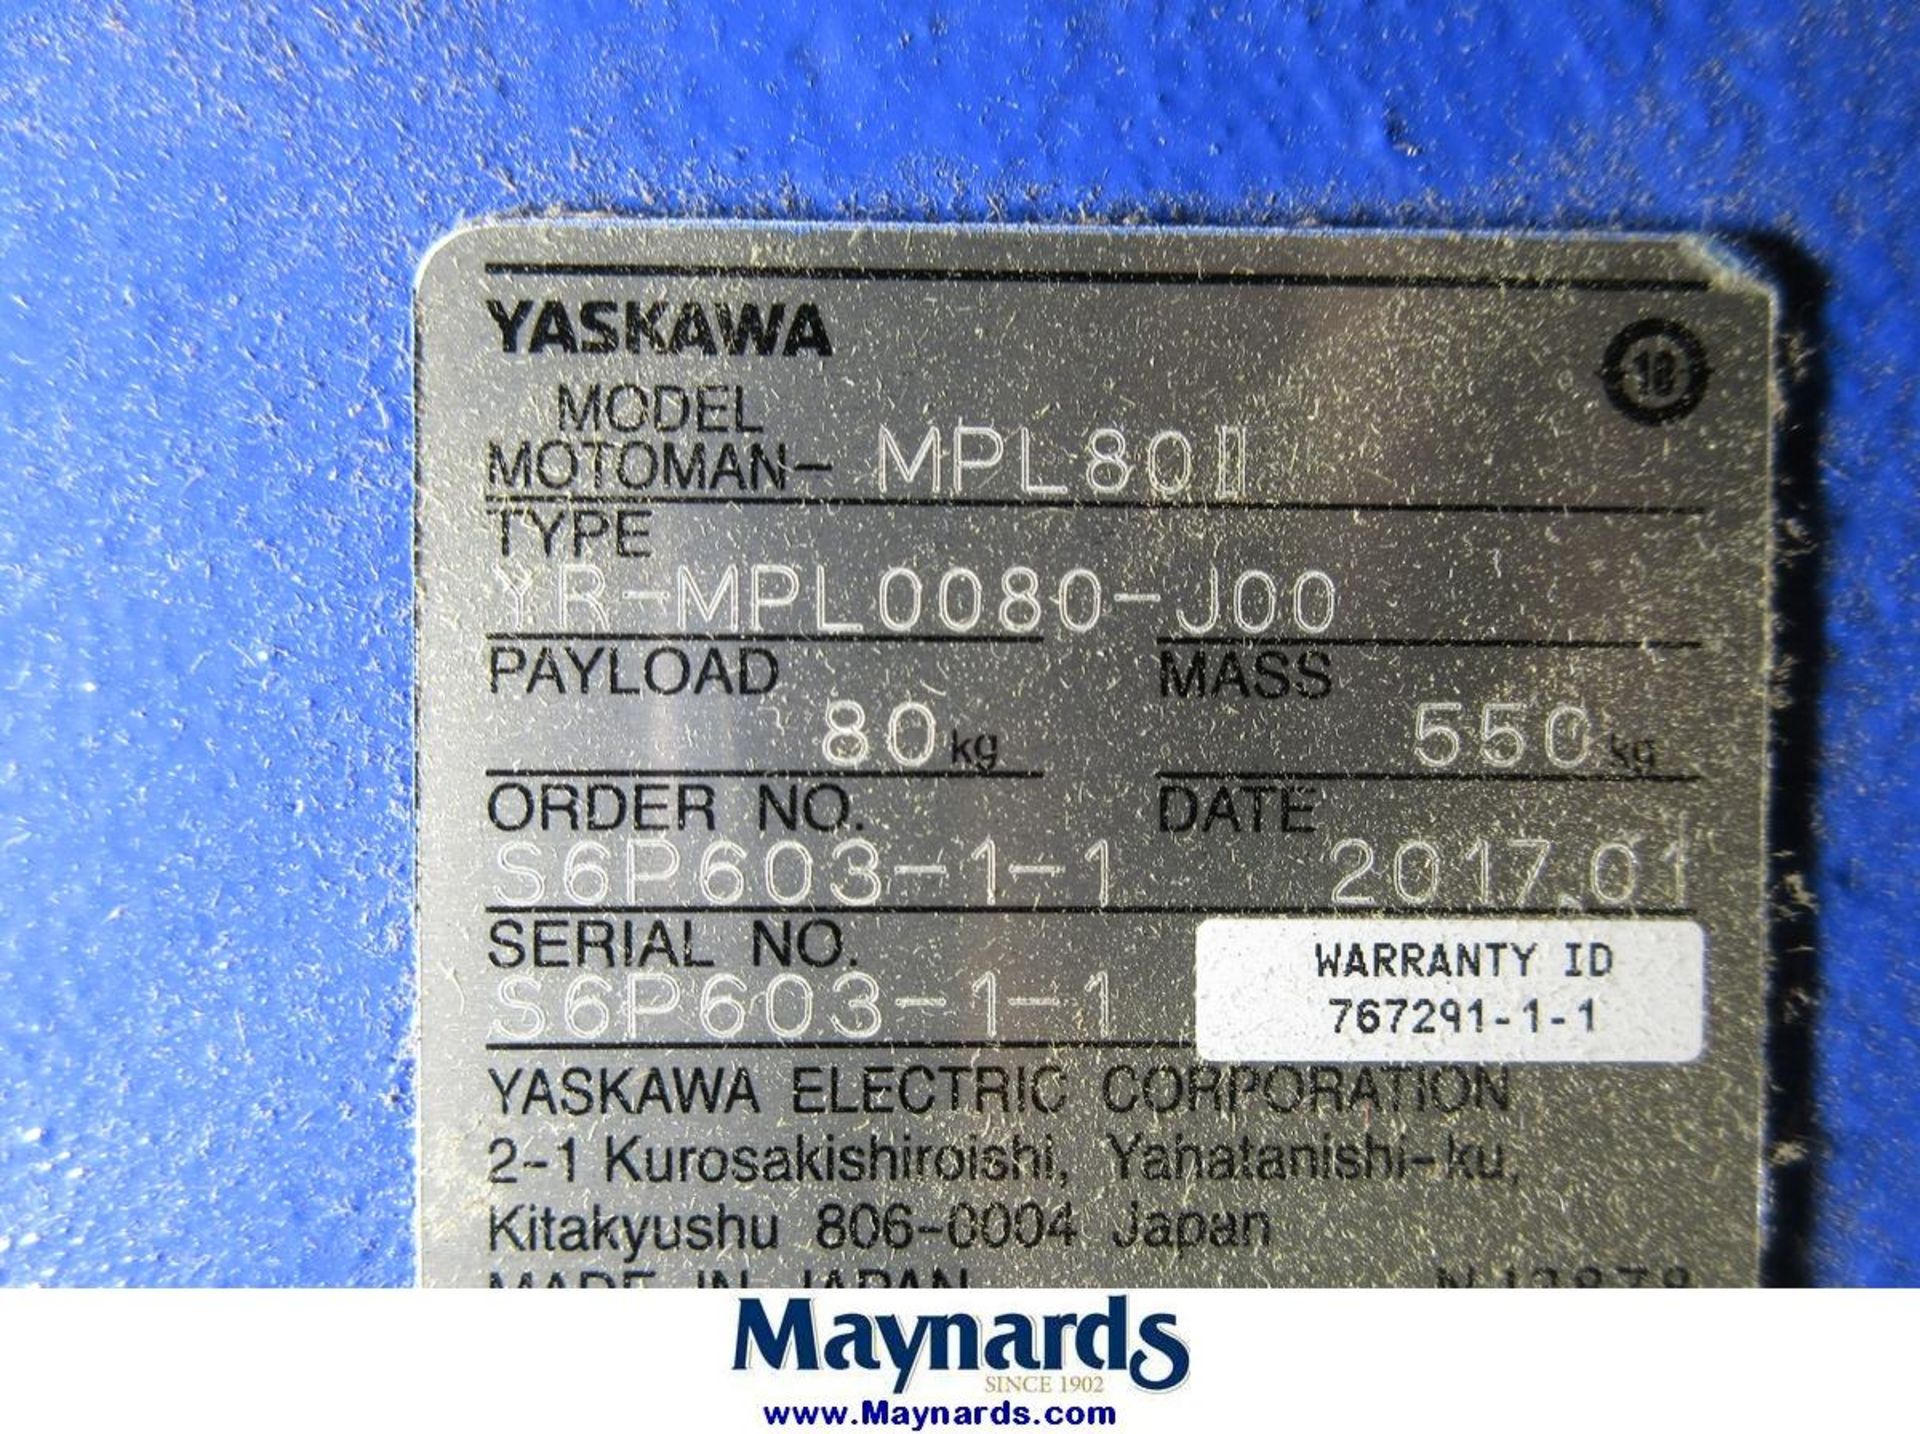 2017 Yaskawa Motoman MPL80II Type YR-MPL0080-J00 Material Handling Robot - Image 6 of 11